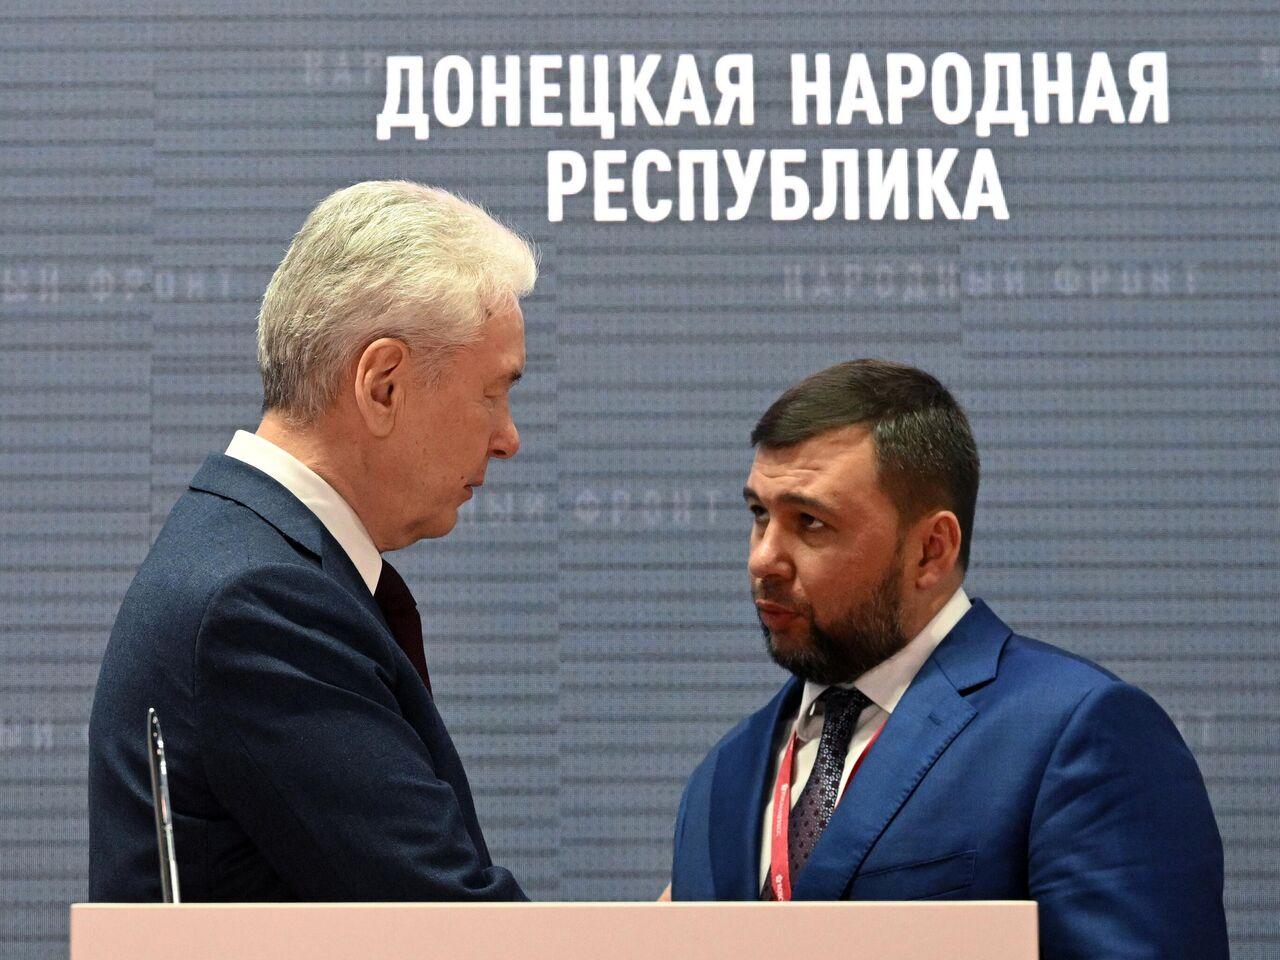 Сергей Собянин напрямую контактирует с Денисом Пушилиным по вопросам восстановления Донбасса